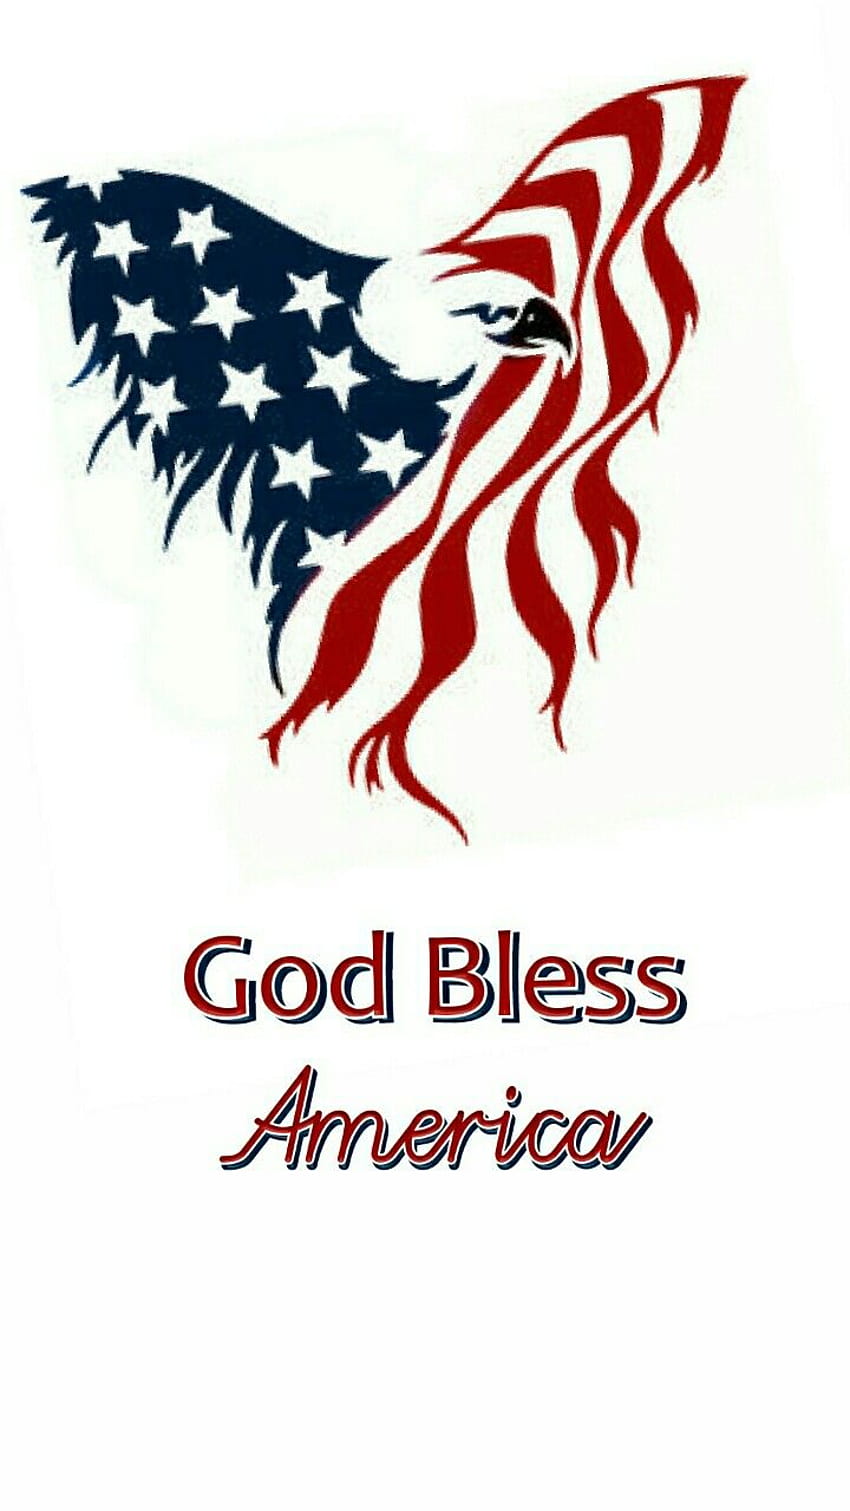 God bless america